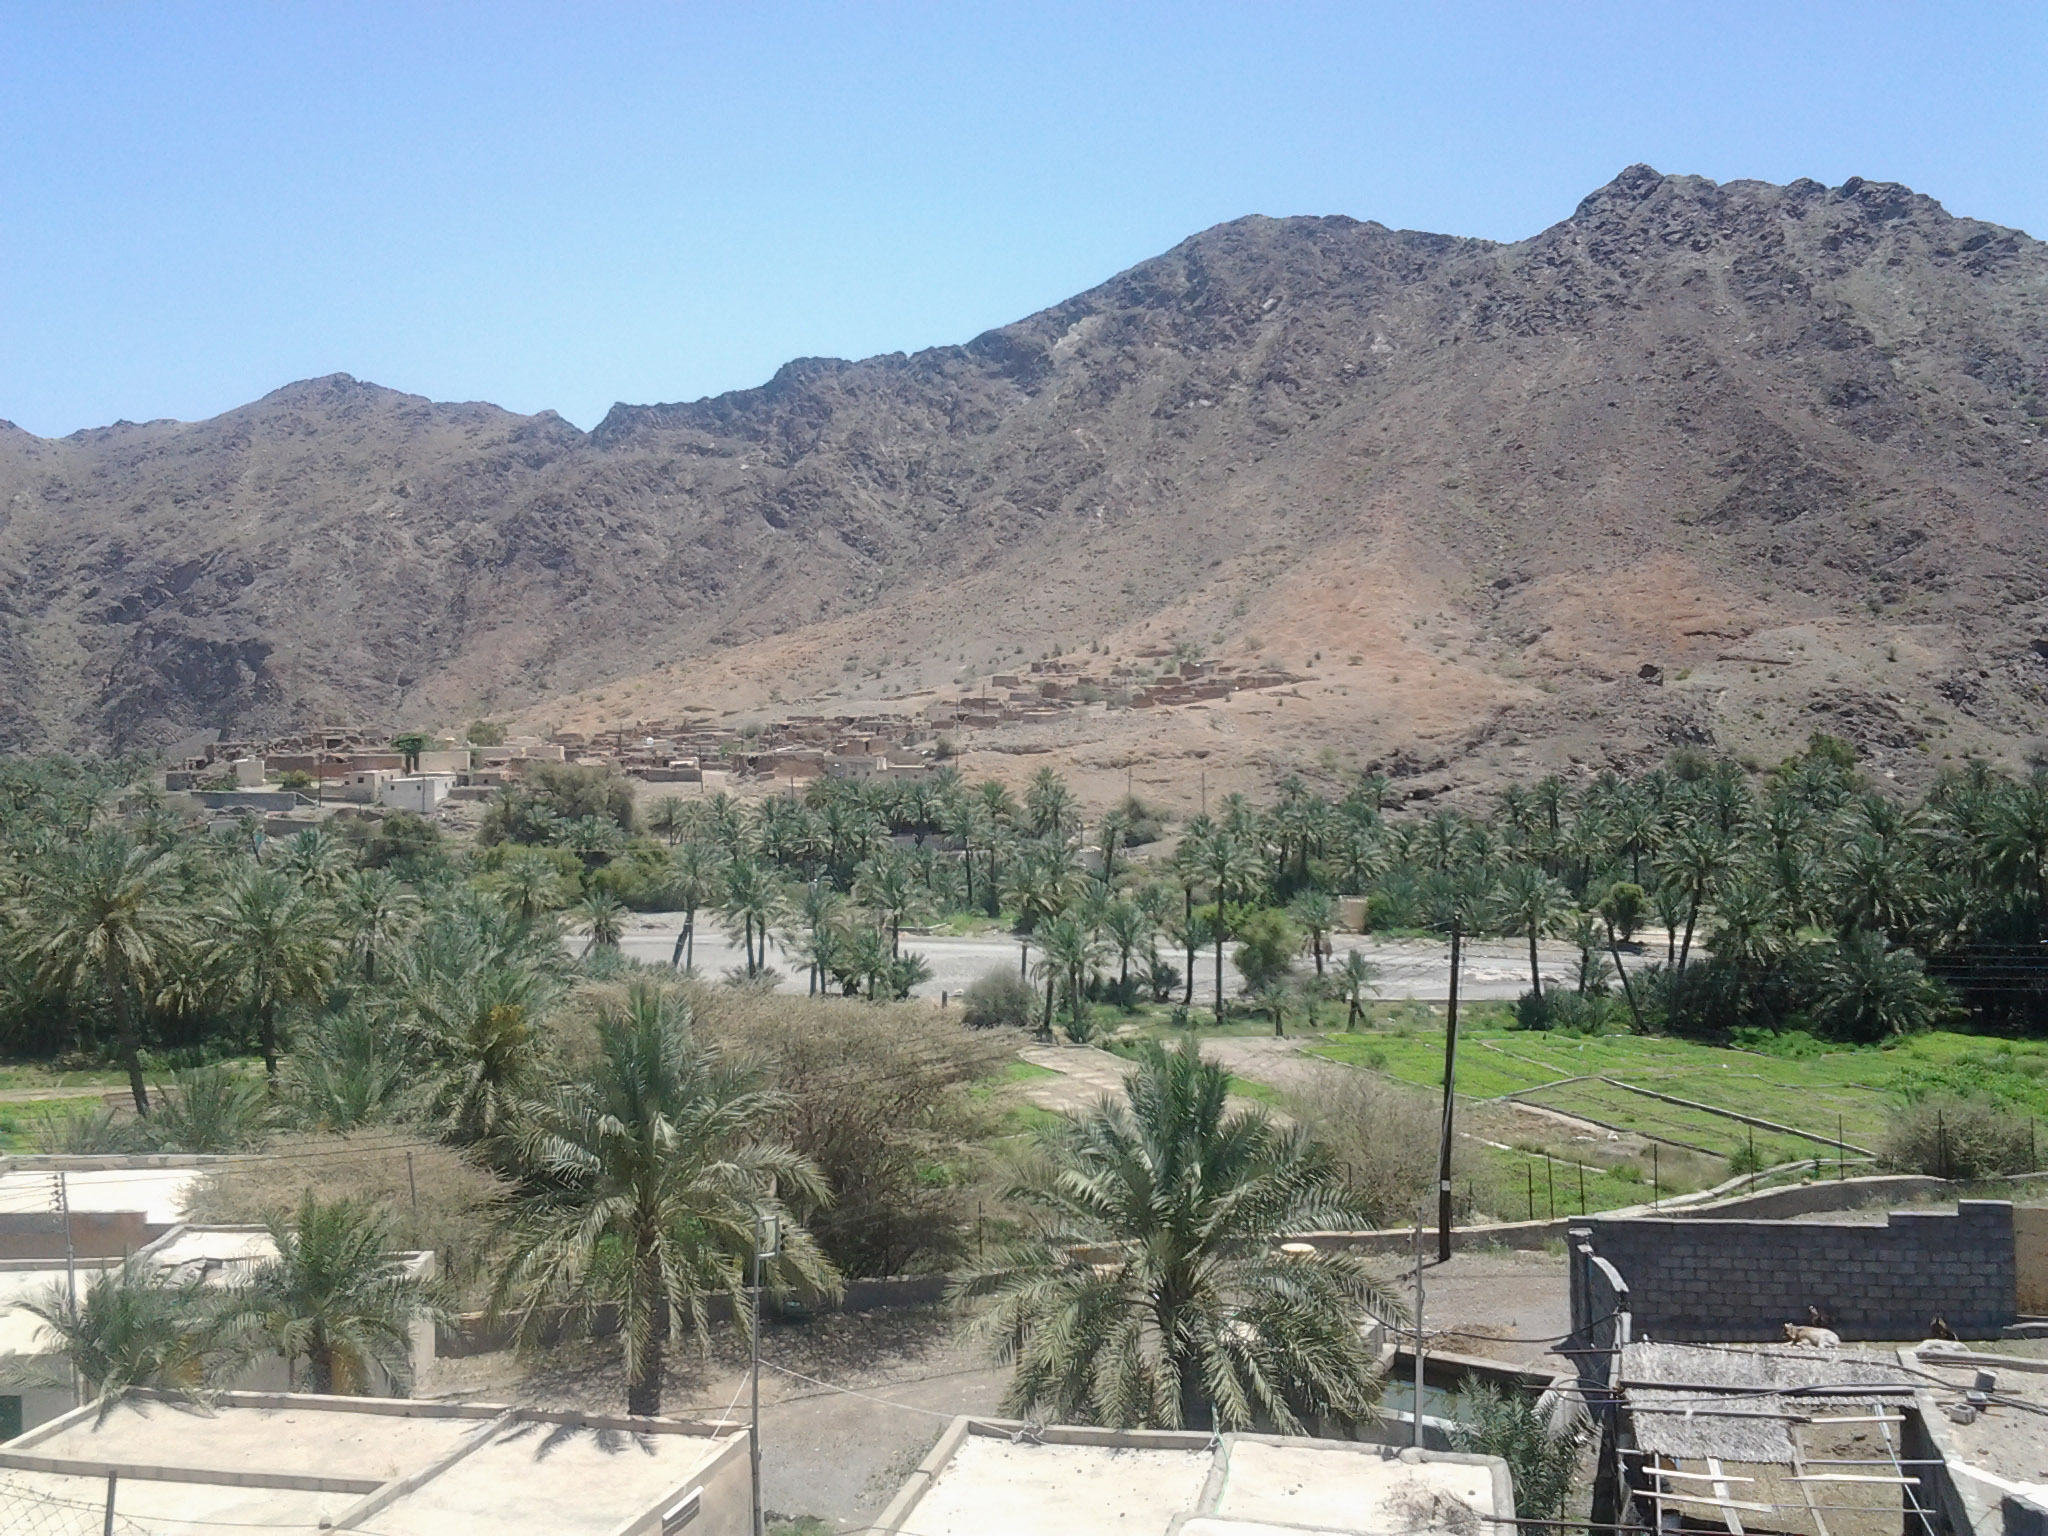 Al Wuqba village in Oman has immense tourism potential